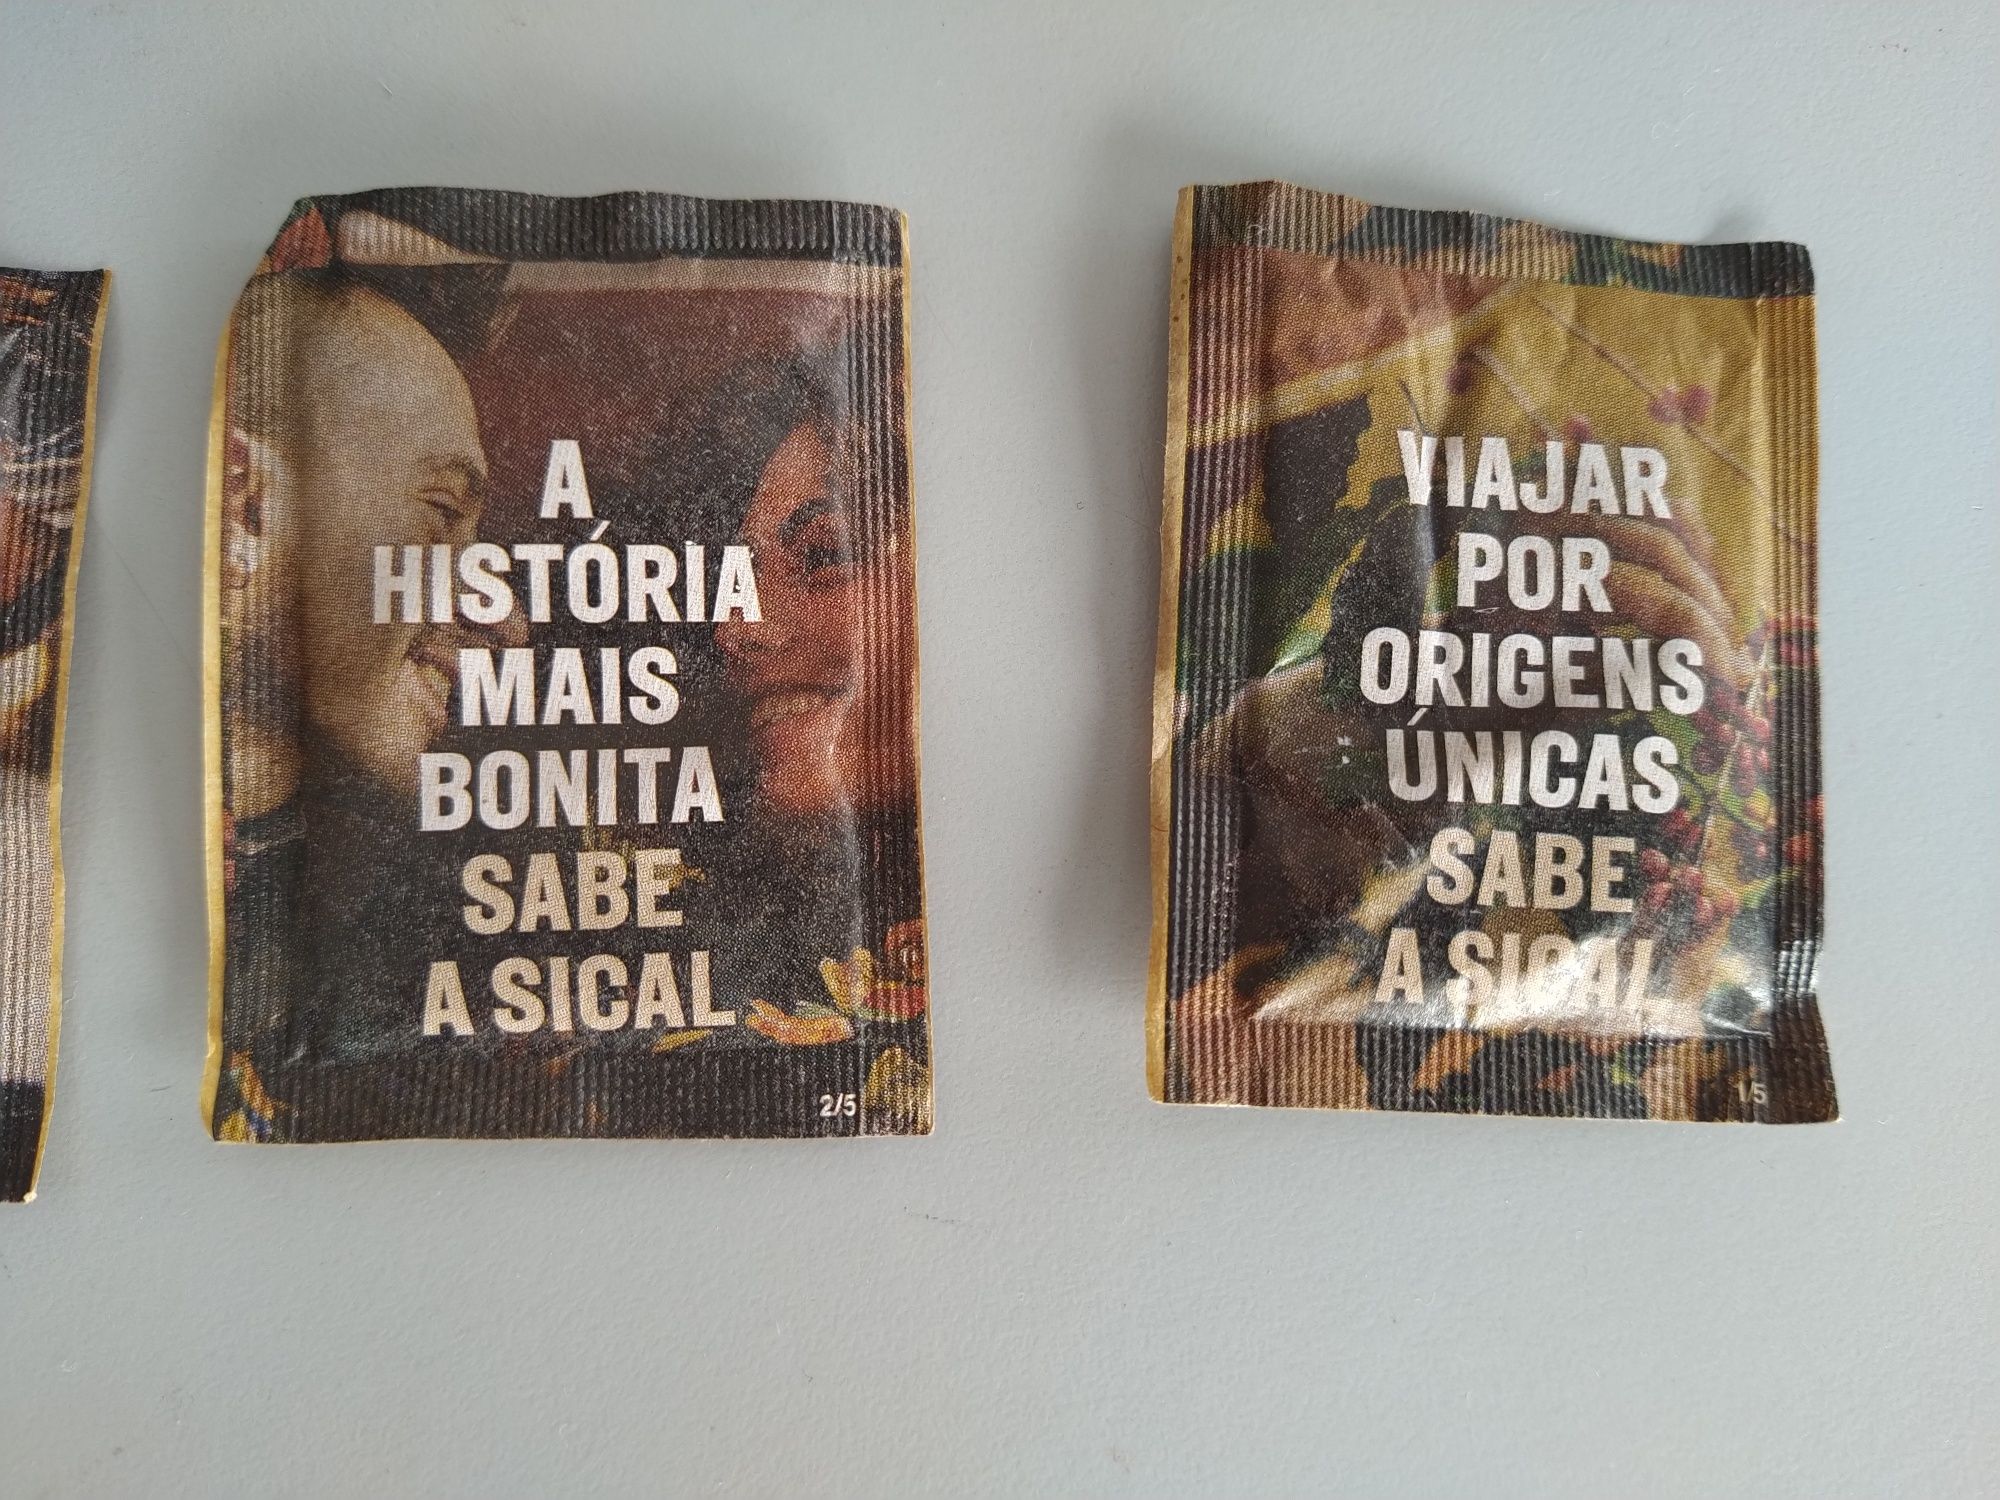 Pacotes de açúcar da Sical - Comemoração dos 75 anos